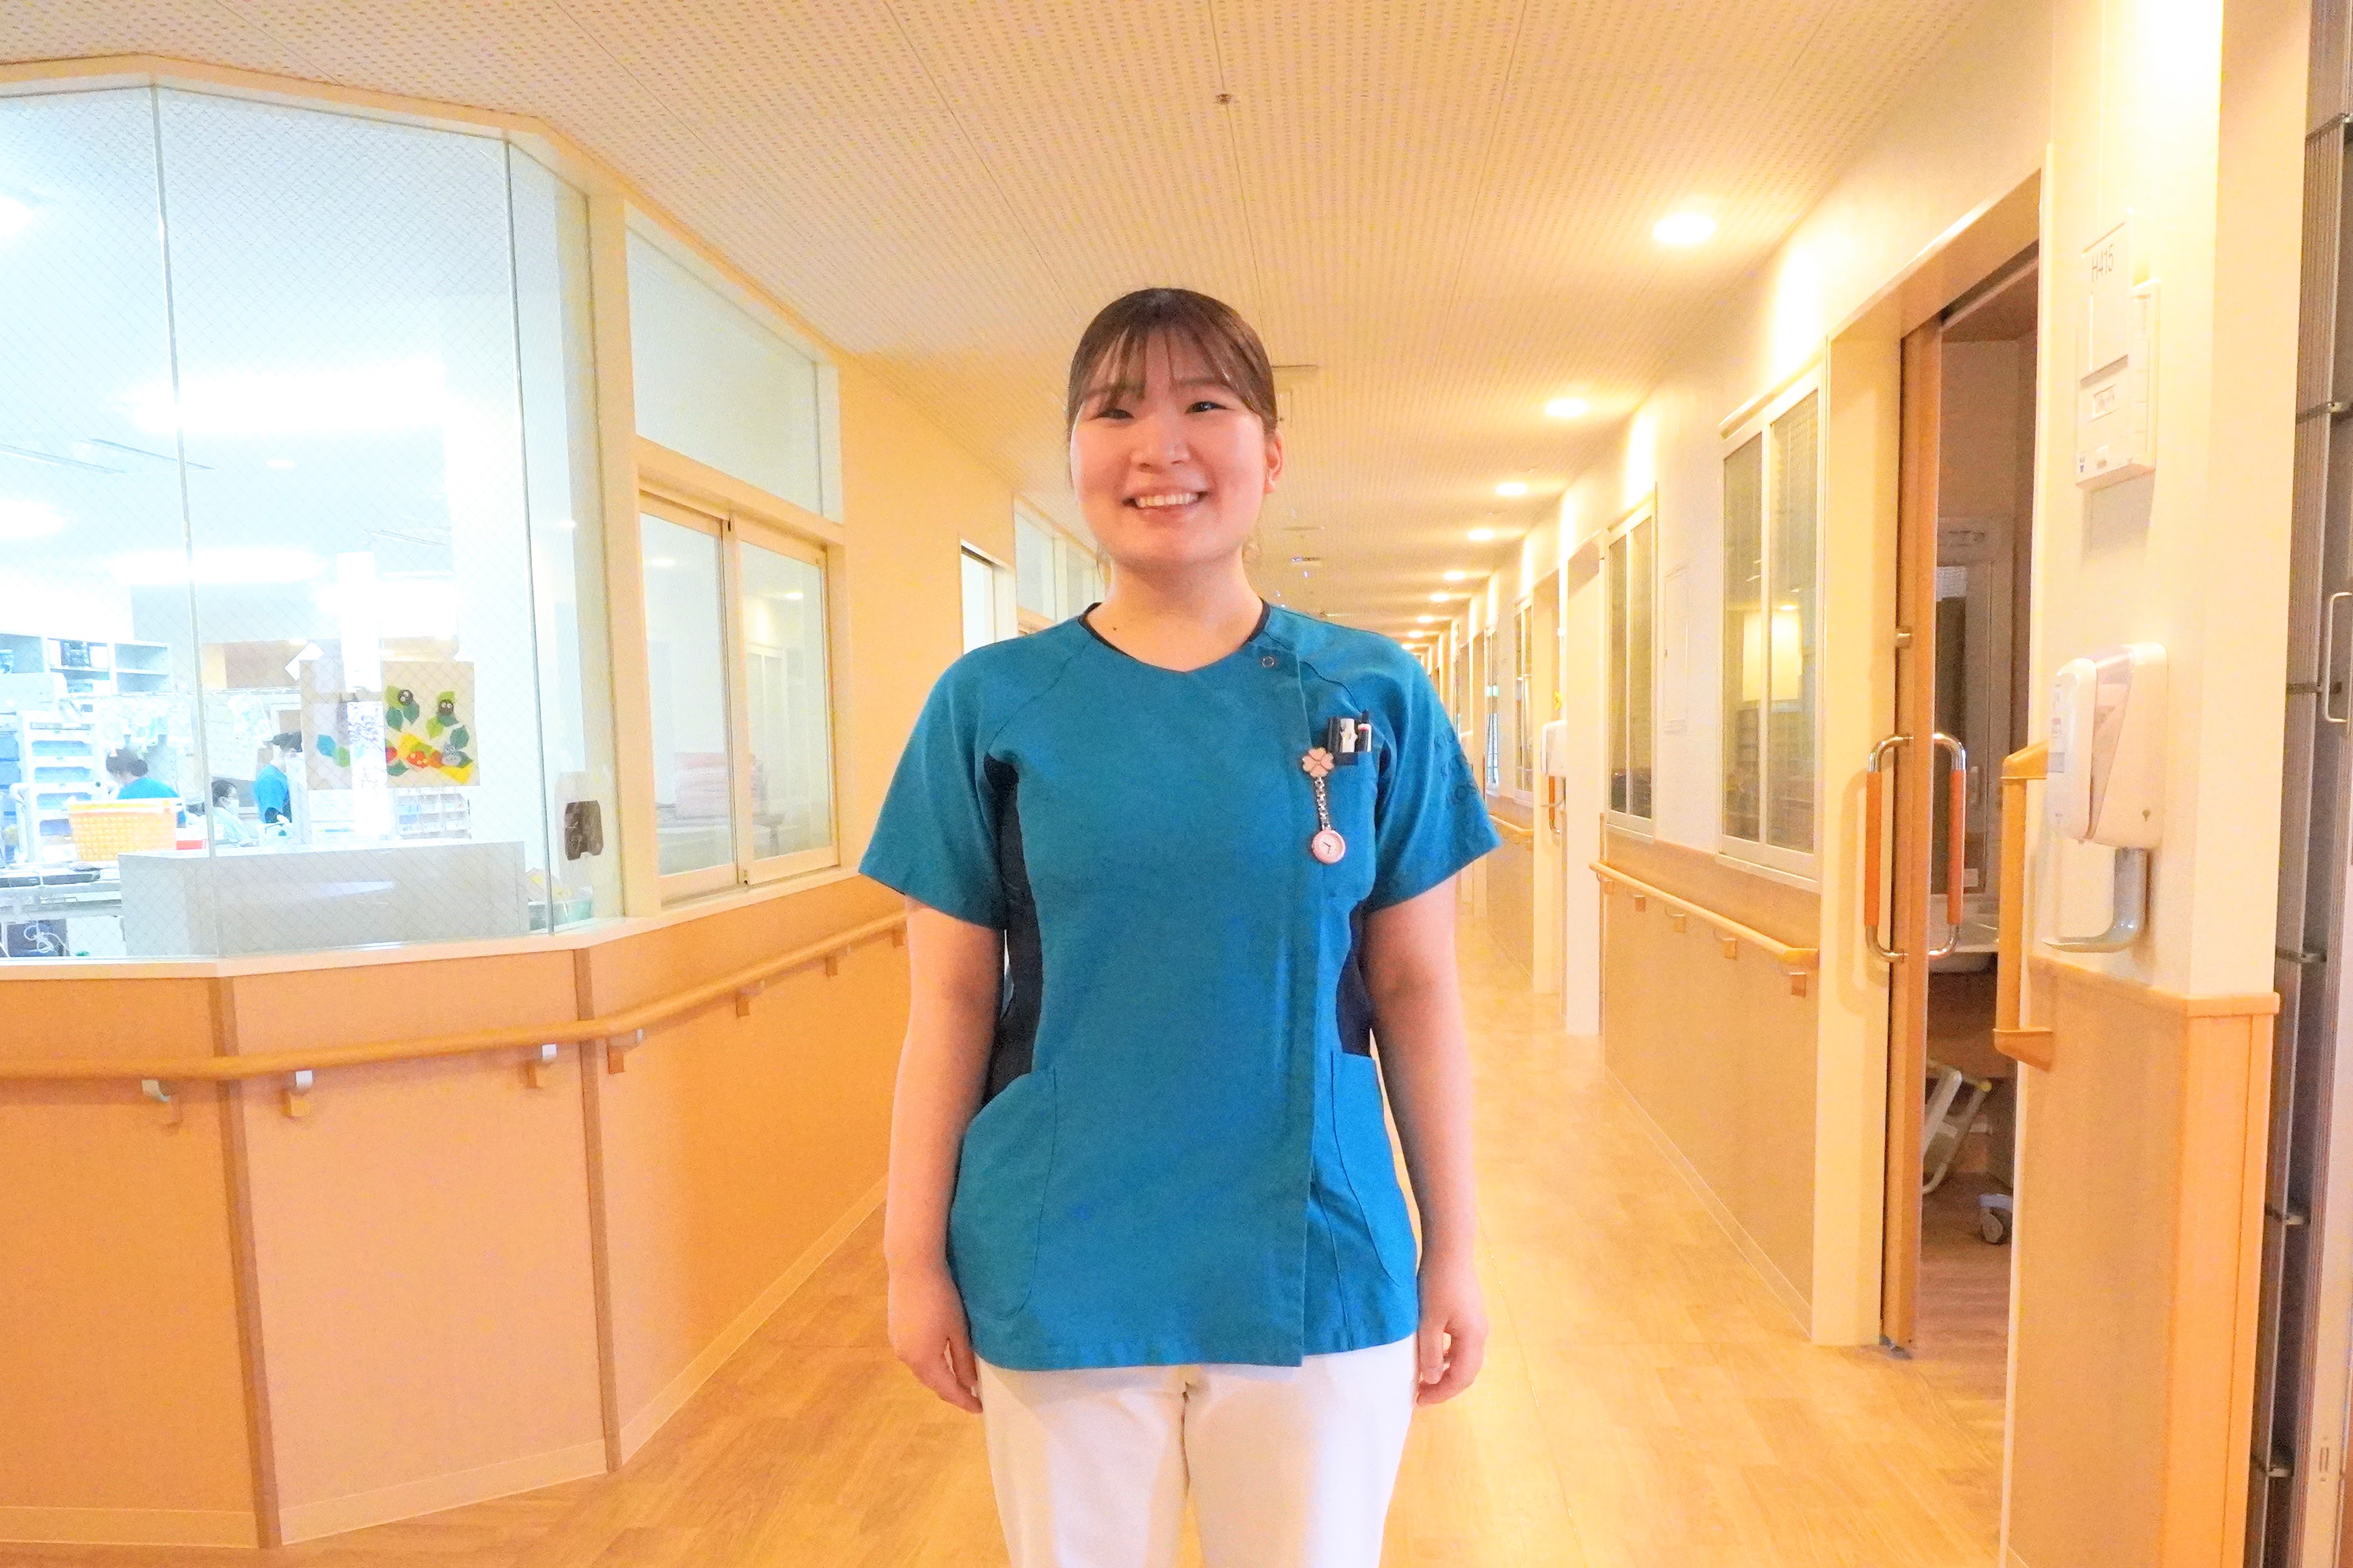 新人看護師へのサポート体制が充実していると感じ京都桂病院を選びました。